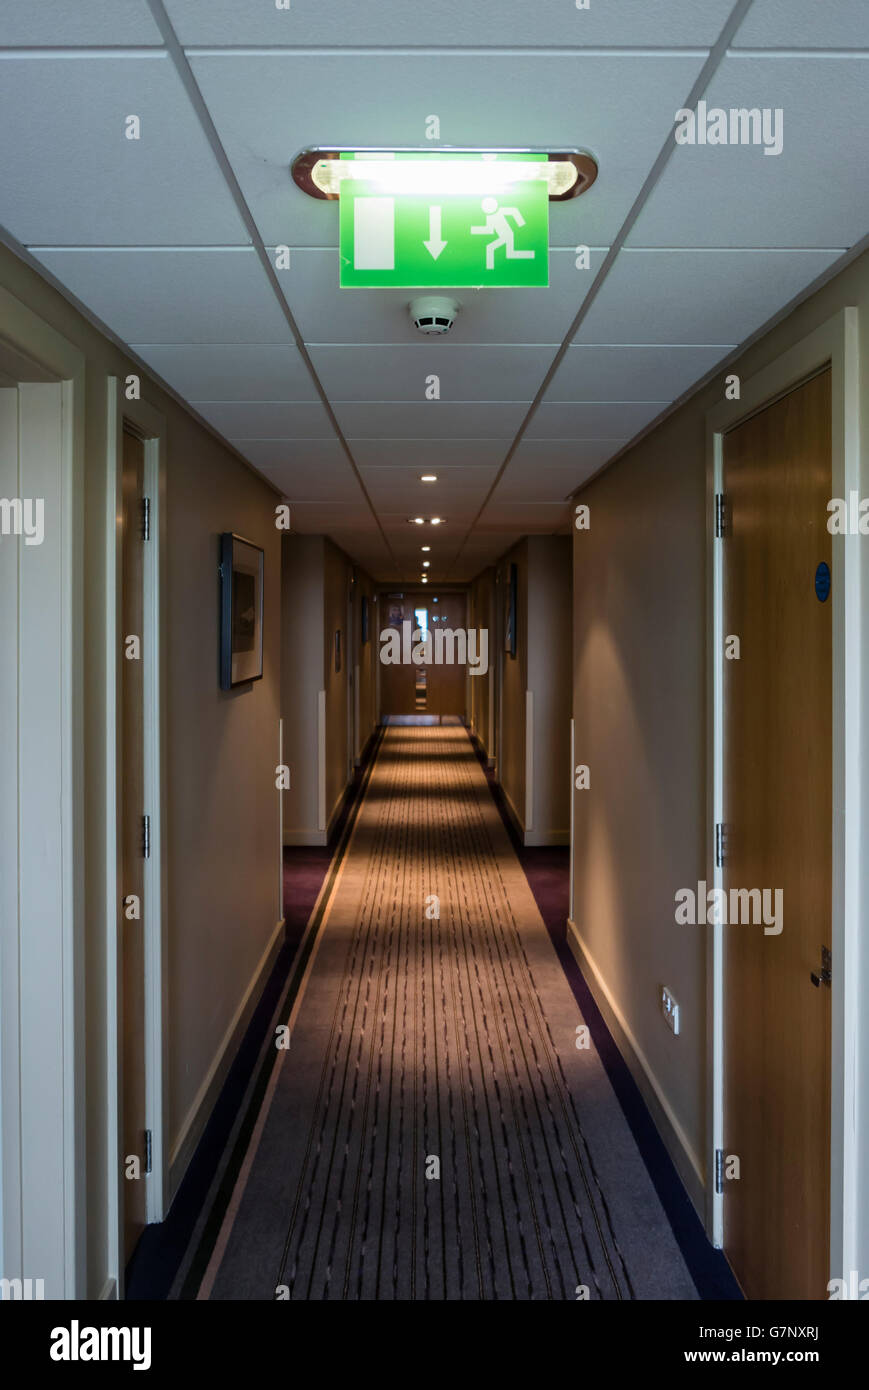 Fire escape sign in a hotel corridor. Stock Photo